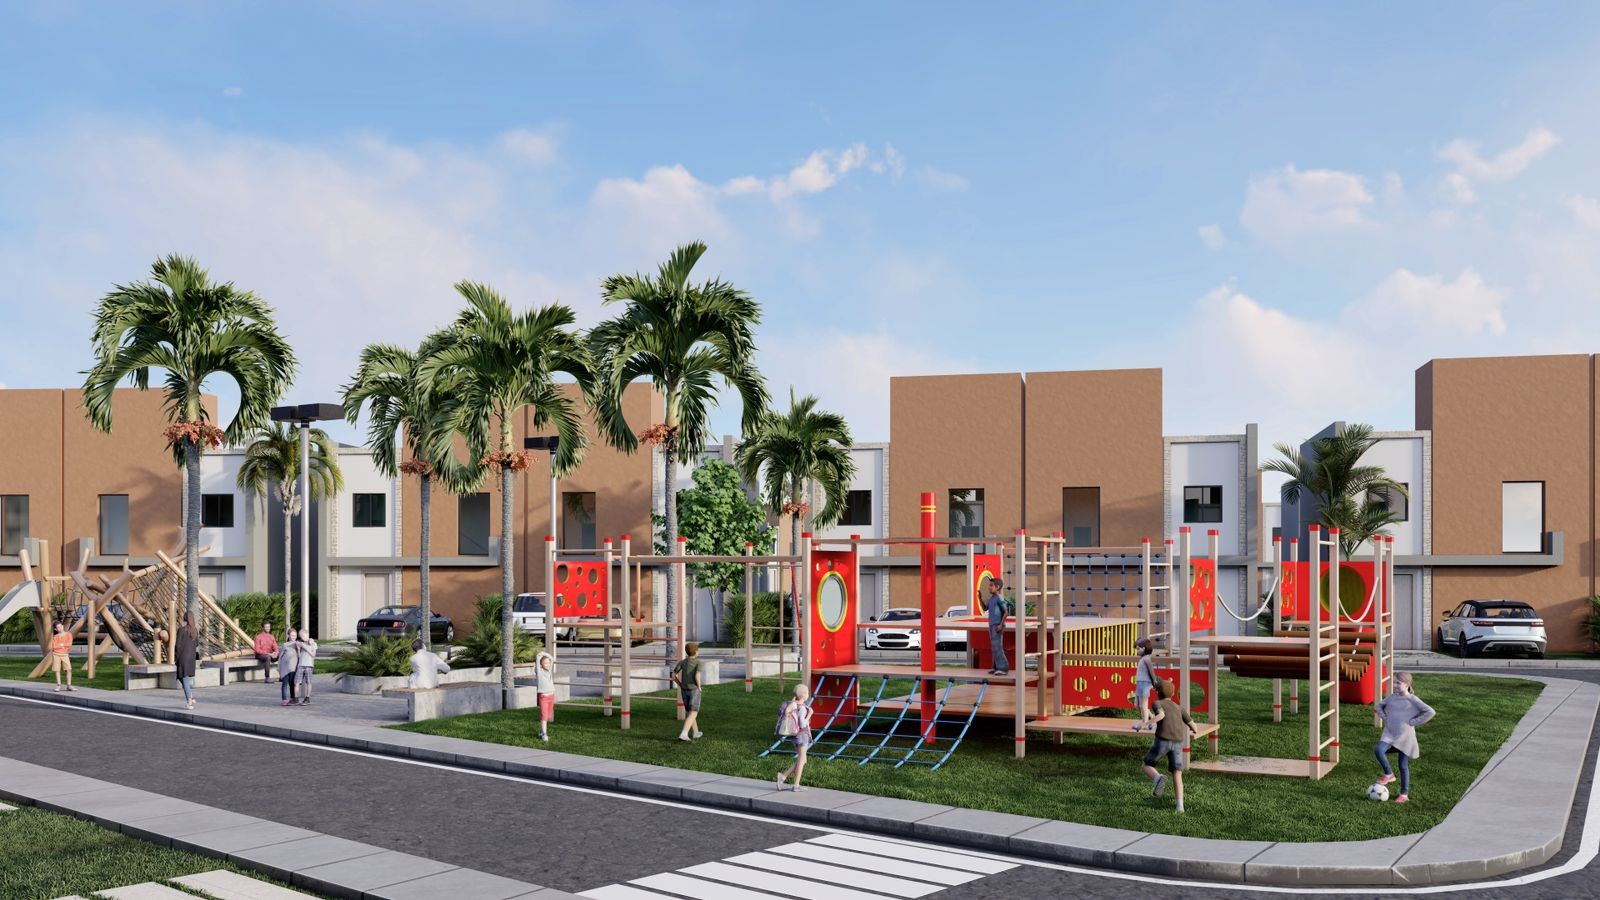 casas vacacionales y villas - Hills Residence Cana, excelente proyecto de villas en Punta Cana:
 7